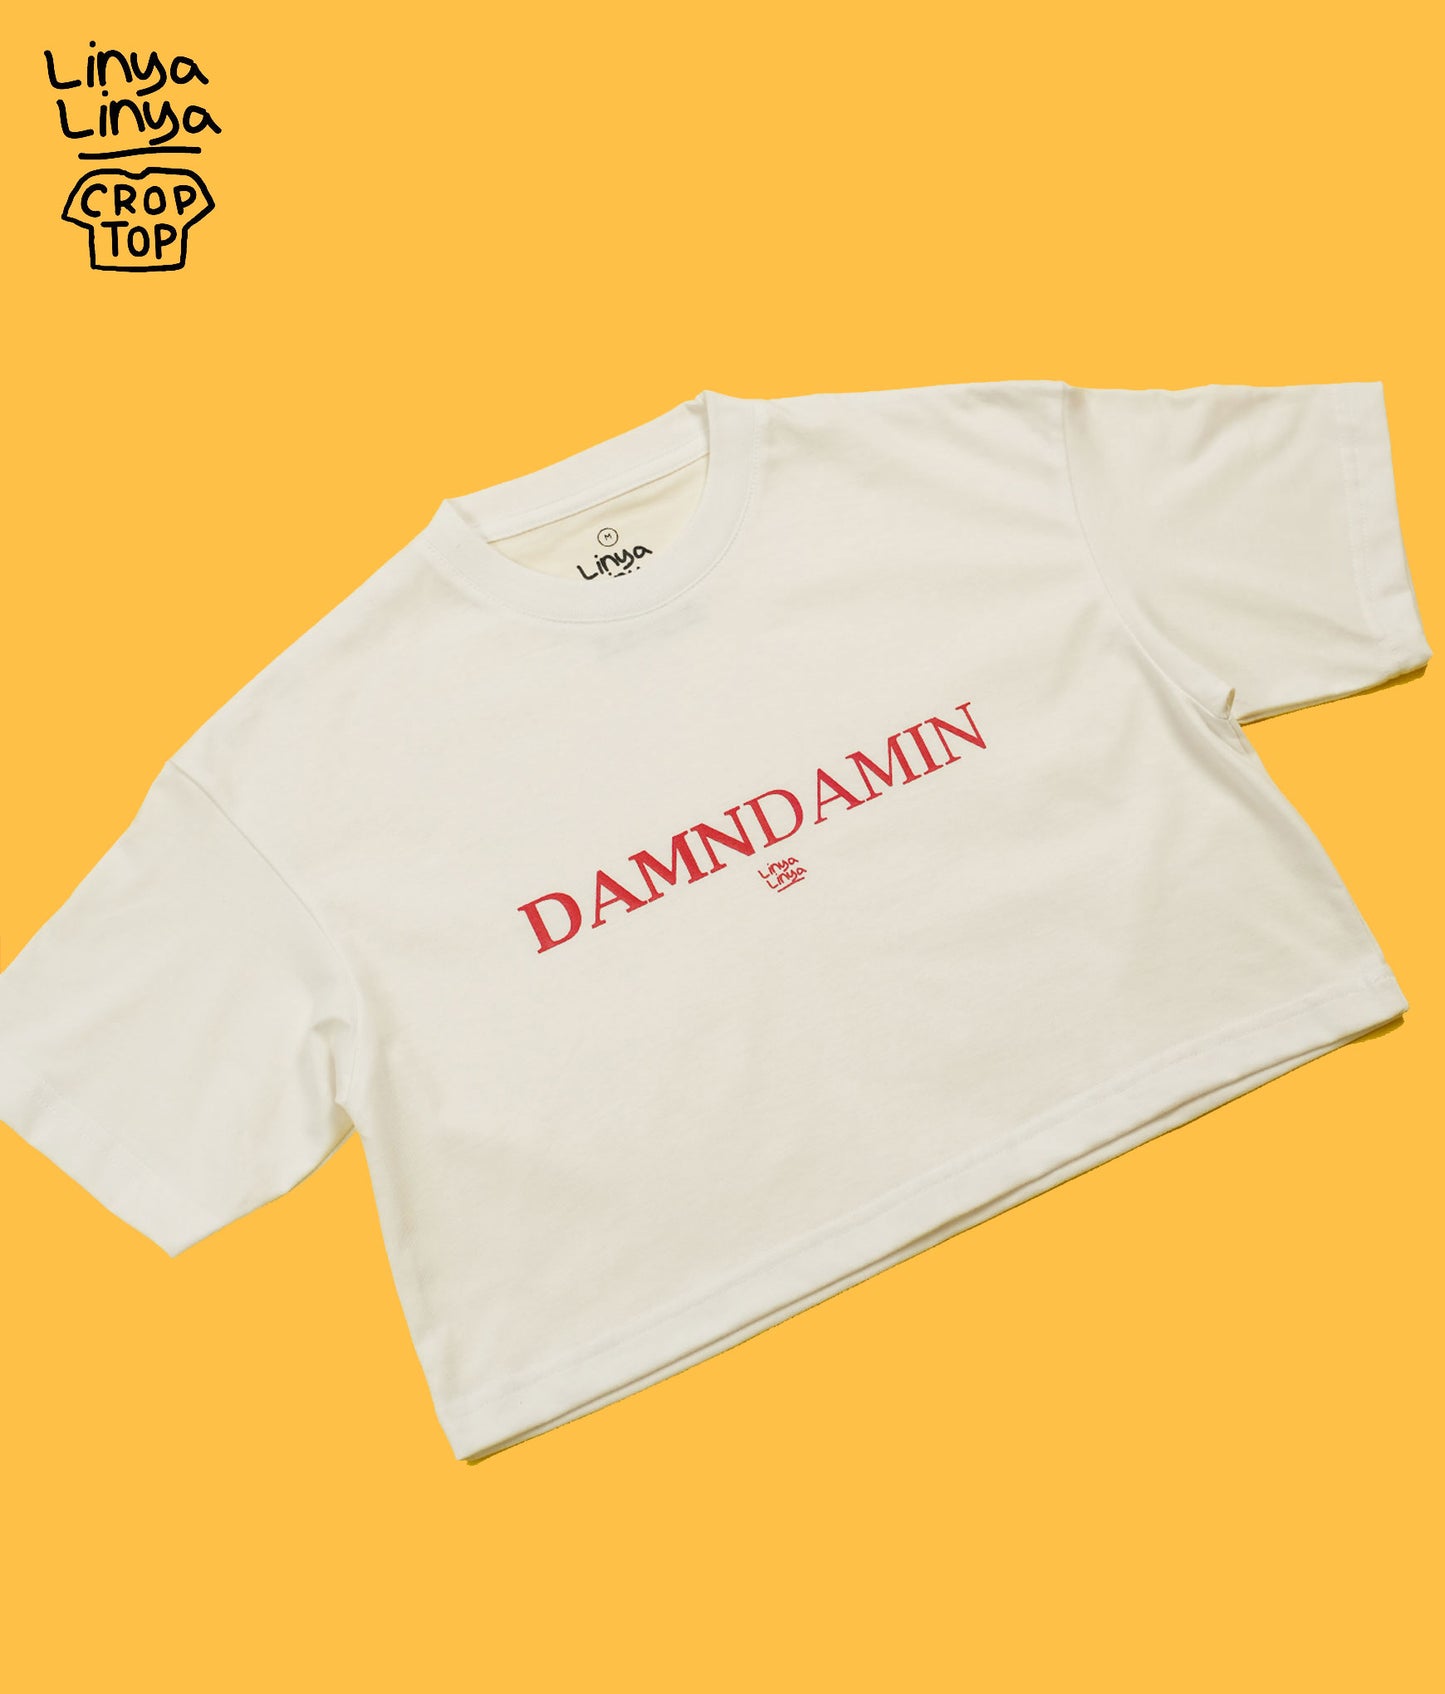 Crop Top: Damndamin (White)